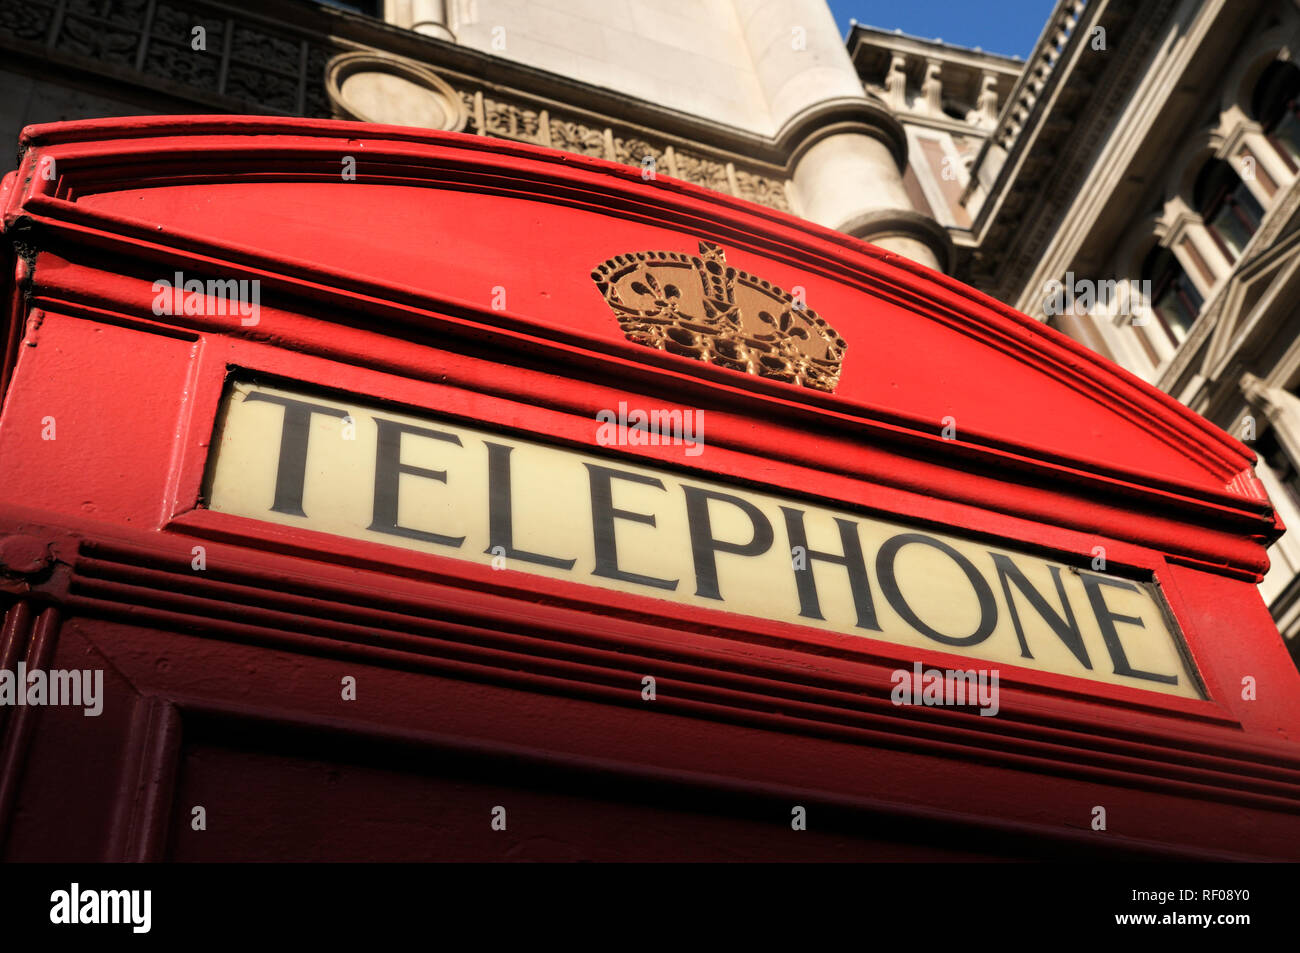 Telefono rosso booth (iconico K2 chiosco progettato da Sir Giles Gilbert Scott), London, England, Regno Unito Foto Stock